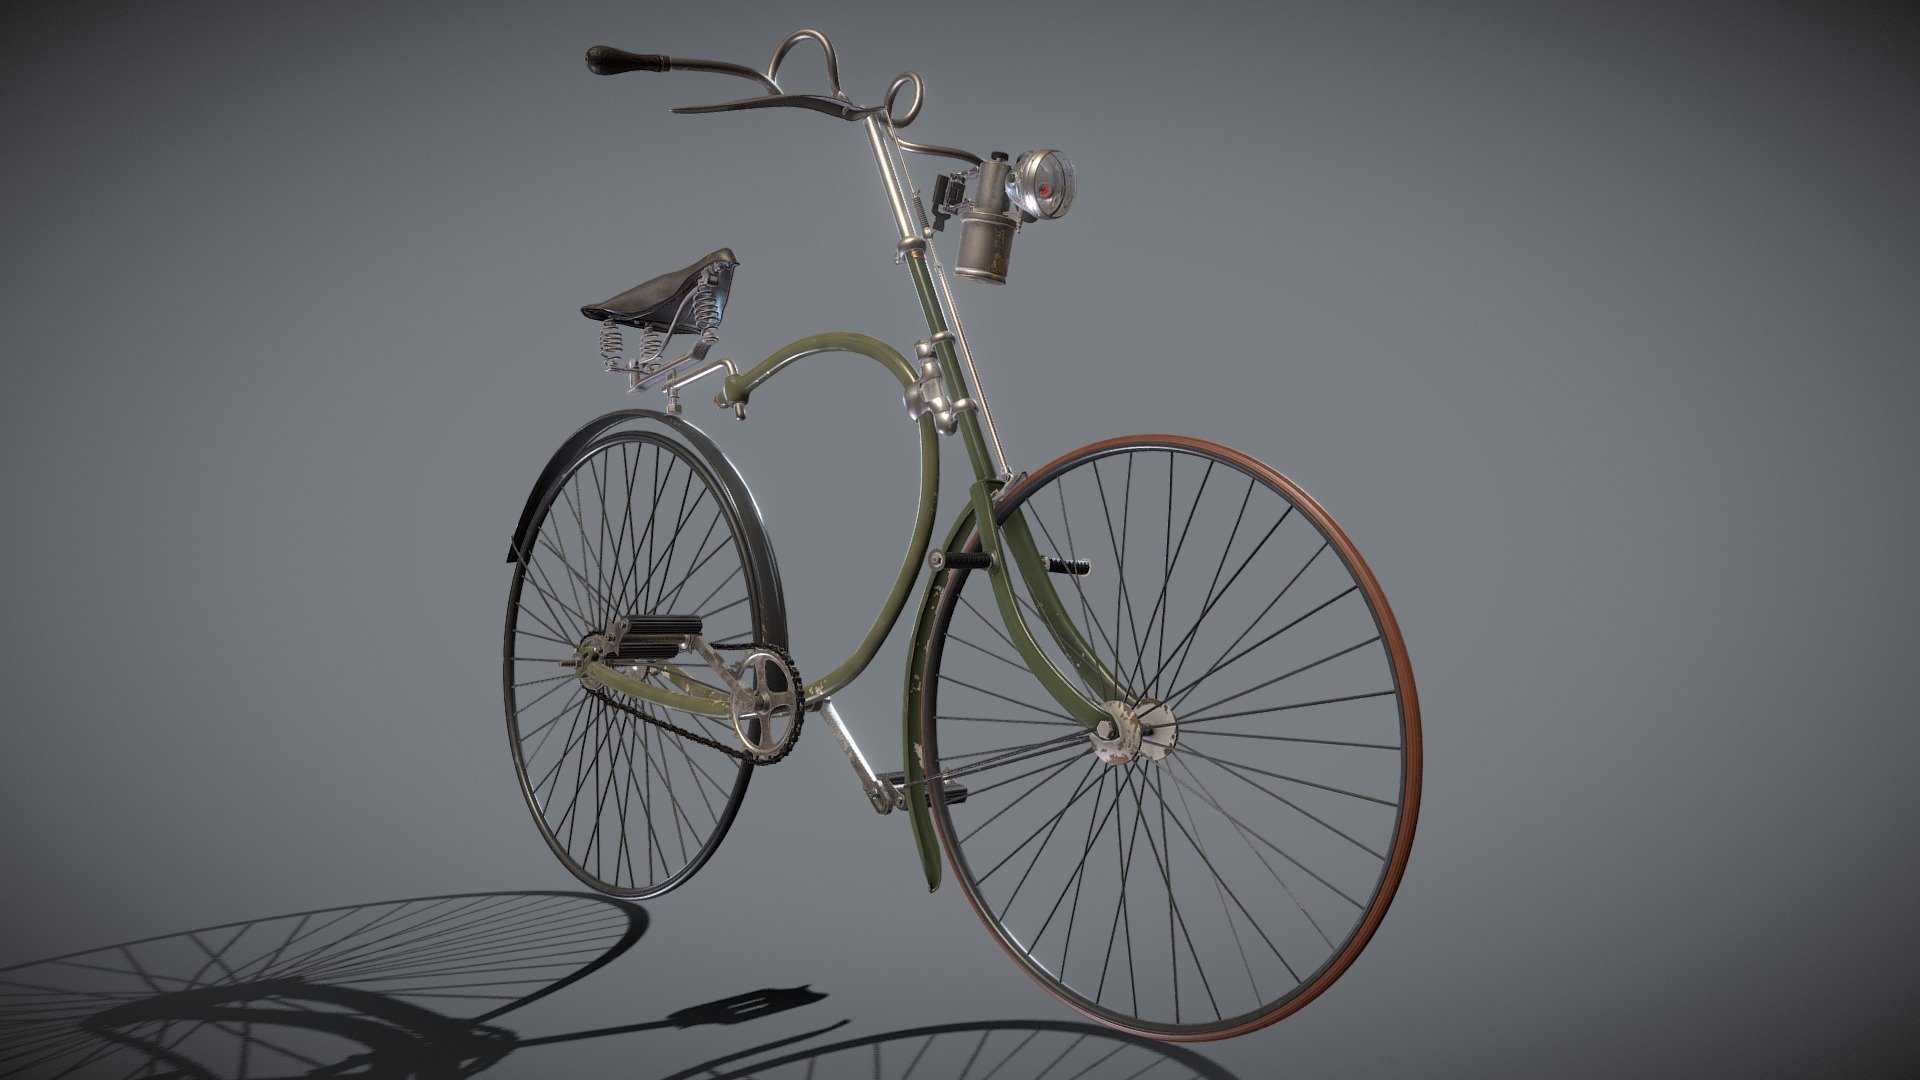 1889, França
El fabricant de bicicletes Hirondelle (1885 – 1960), va ser un dels pioners de la indústria de la bicicleta francesa, un dels països on nasqué amb més força aquesta nova manera de desplaçar-se.
Als inicis de la bicicleta diferents tipologies de velocípedes convivien, grans by, draisines, Michaux,&hellip; cadascuna amb els seus defectes i les seves virtuts, fins què a la dècada de 1880 al Regne Unit és patentà la “Safety bike”, un tipus de bicicleta que fixaria els canons que es segueixen aplicant avui en dia en la fabricació d’aquest invent, dos rodes del mateixa mida i us de cadena i pedals.
Hirondelle fou el primer fabricant francès en produir aquestes revolucionaries “safety bikes”, i el model Superbe, era l’exponent de luxe, en destaca el seu acurat disseny de formes recargolades, la barra superior del quadre de forma corbada i què acaba al seient sense connectar amb la resta d’estructura pretén actuar com a suspensió 3d model